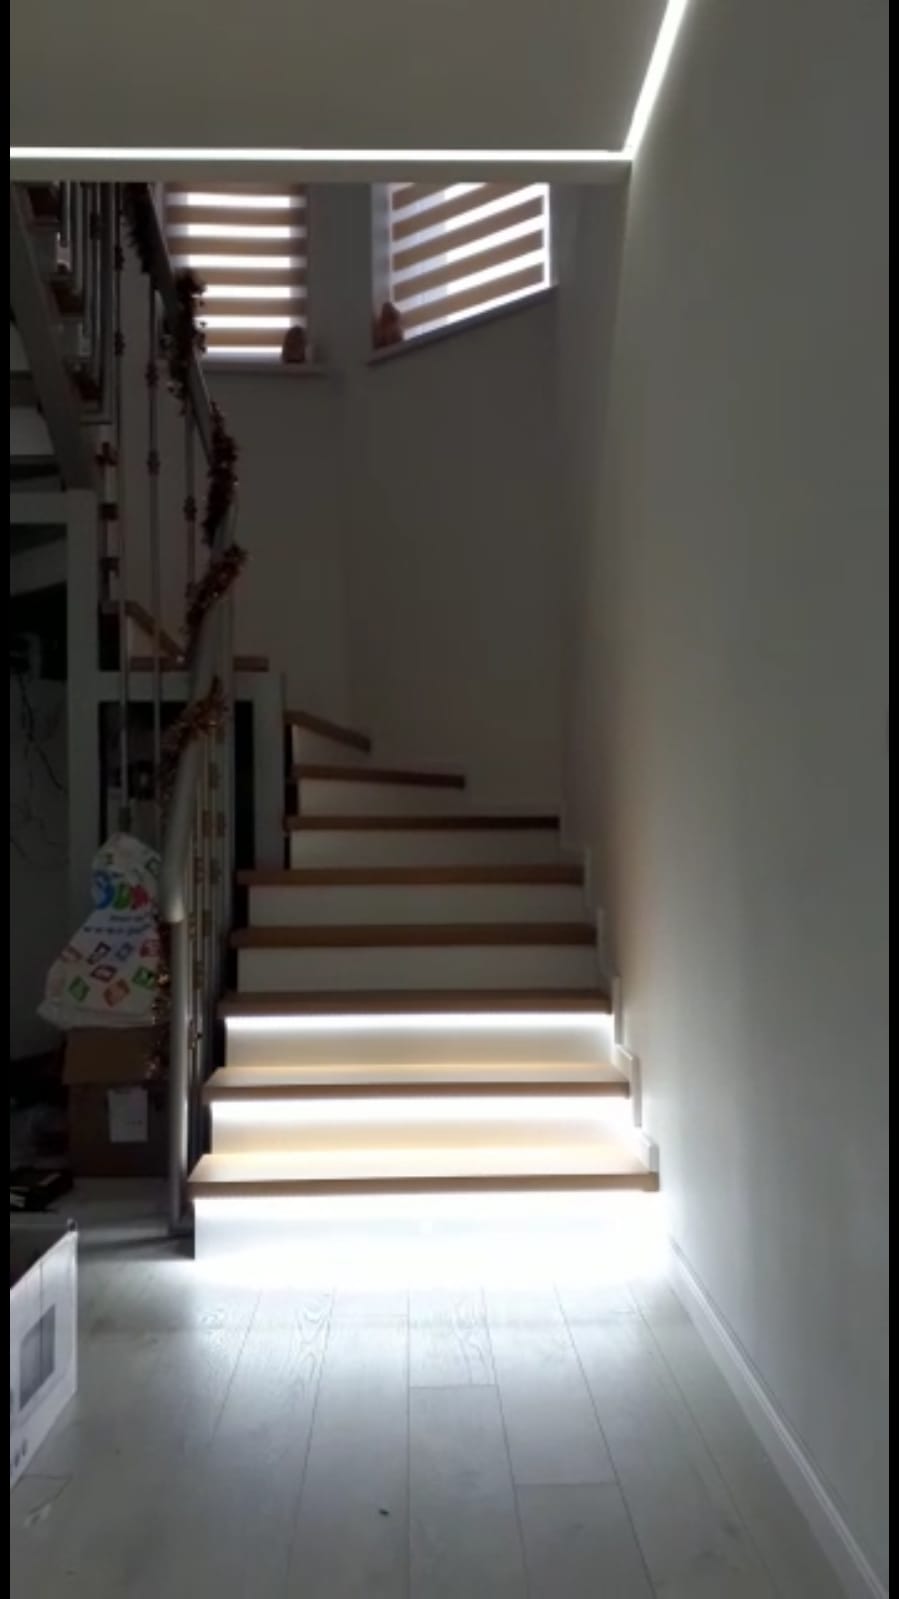 Kit iluminat inteligent pentru trepte este solutia de iluminat ieftin si eficient al scarilor interioare